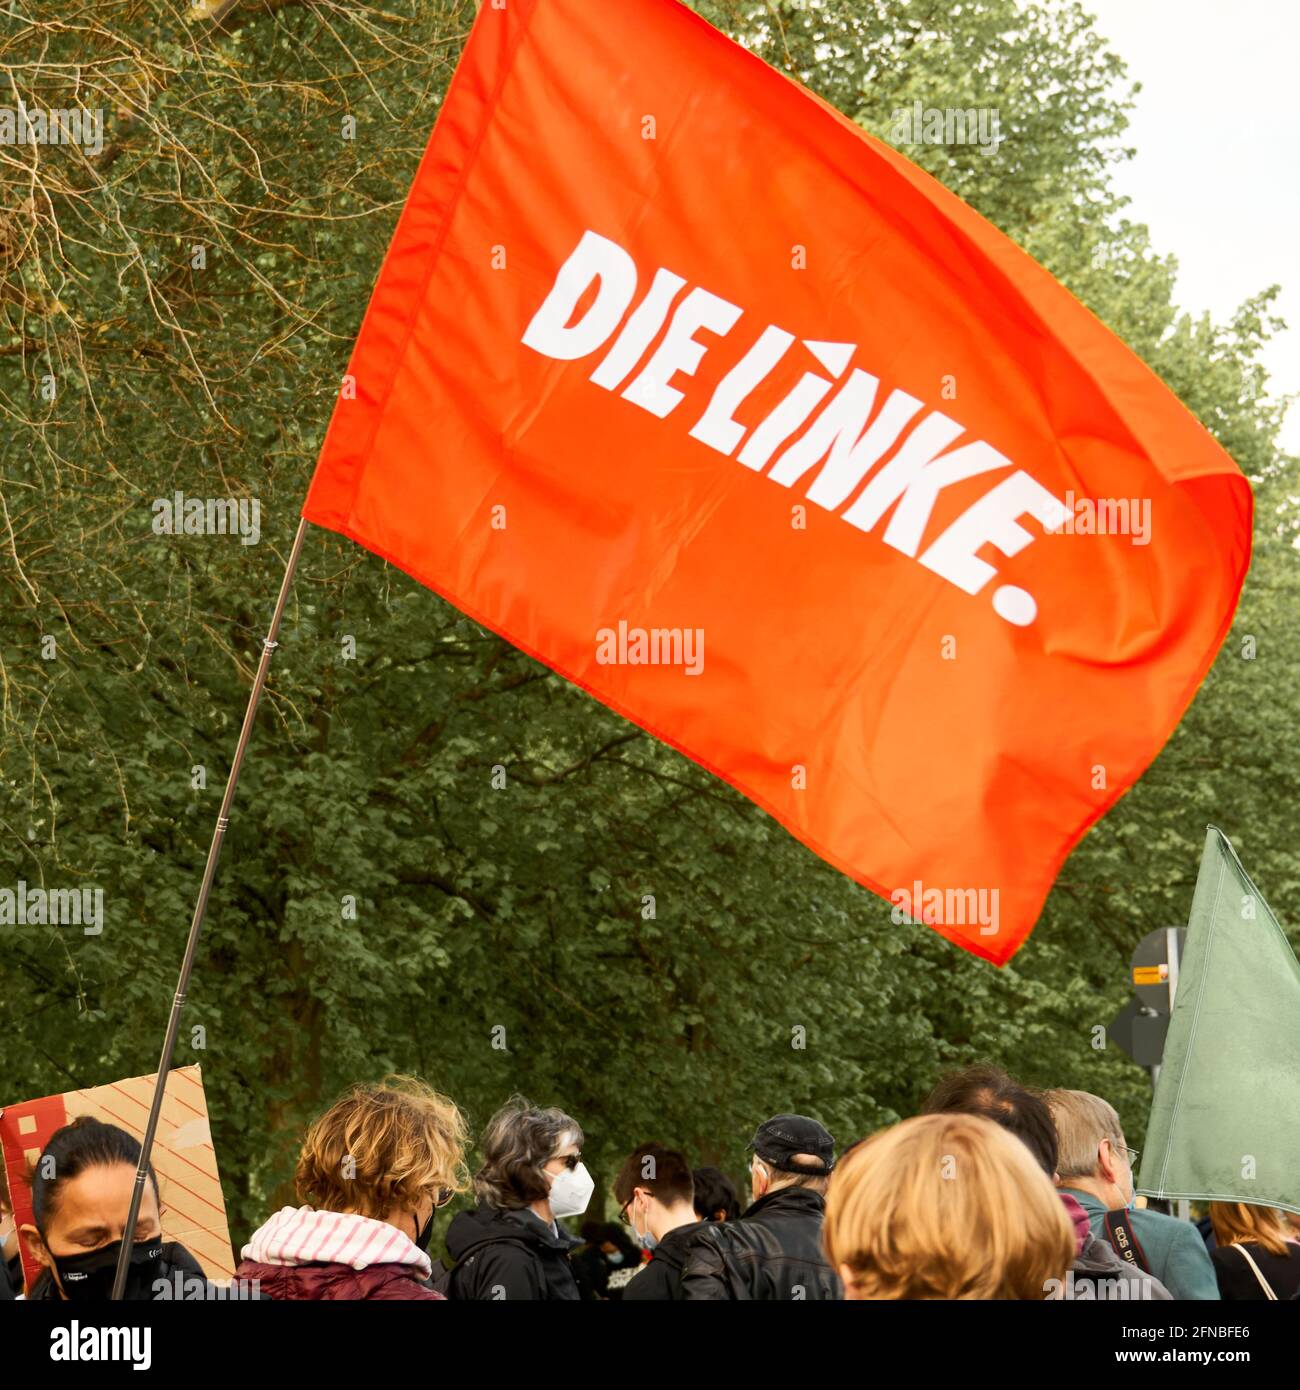 https://c8.alamy.com/compde/2fnbfe6/braunschweig-15-mai-2021-demonstration-parteitag-der-afd-rote-fahne-der-linken-partei-die-linke-fliegt-uber-die-kopfe-der-demonstranten-2fnbfe6.jpg